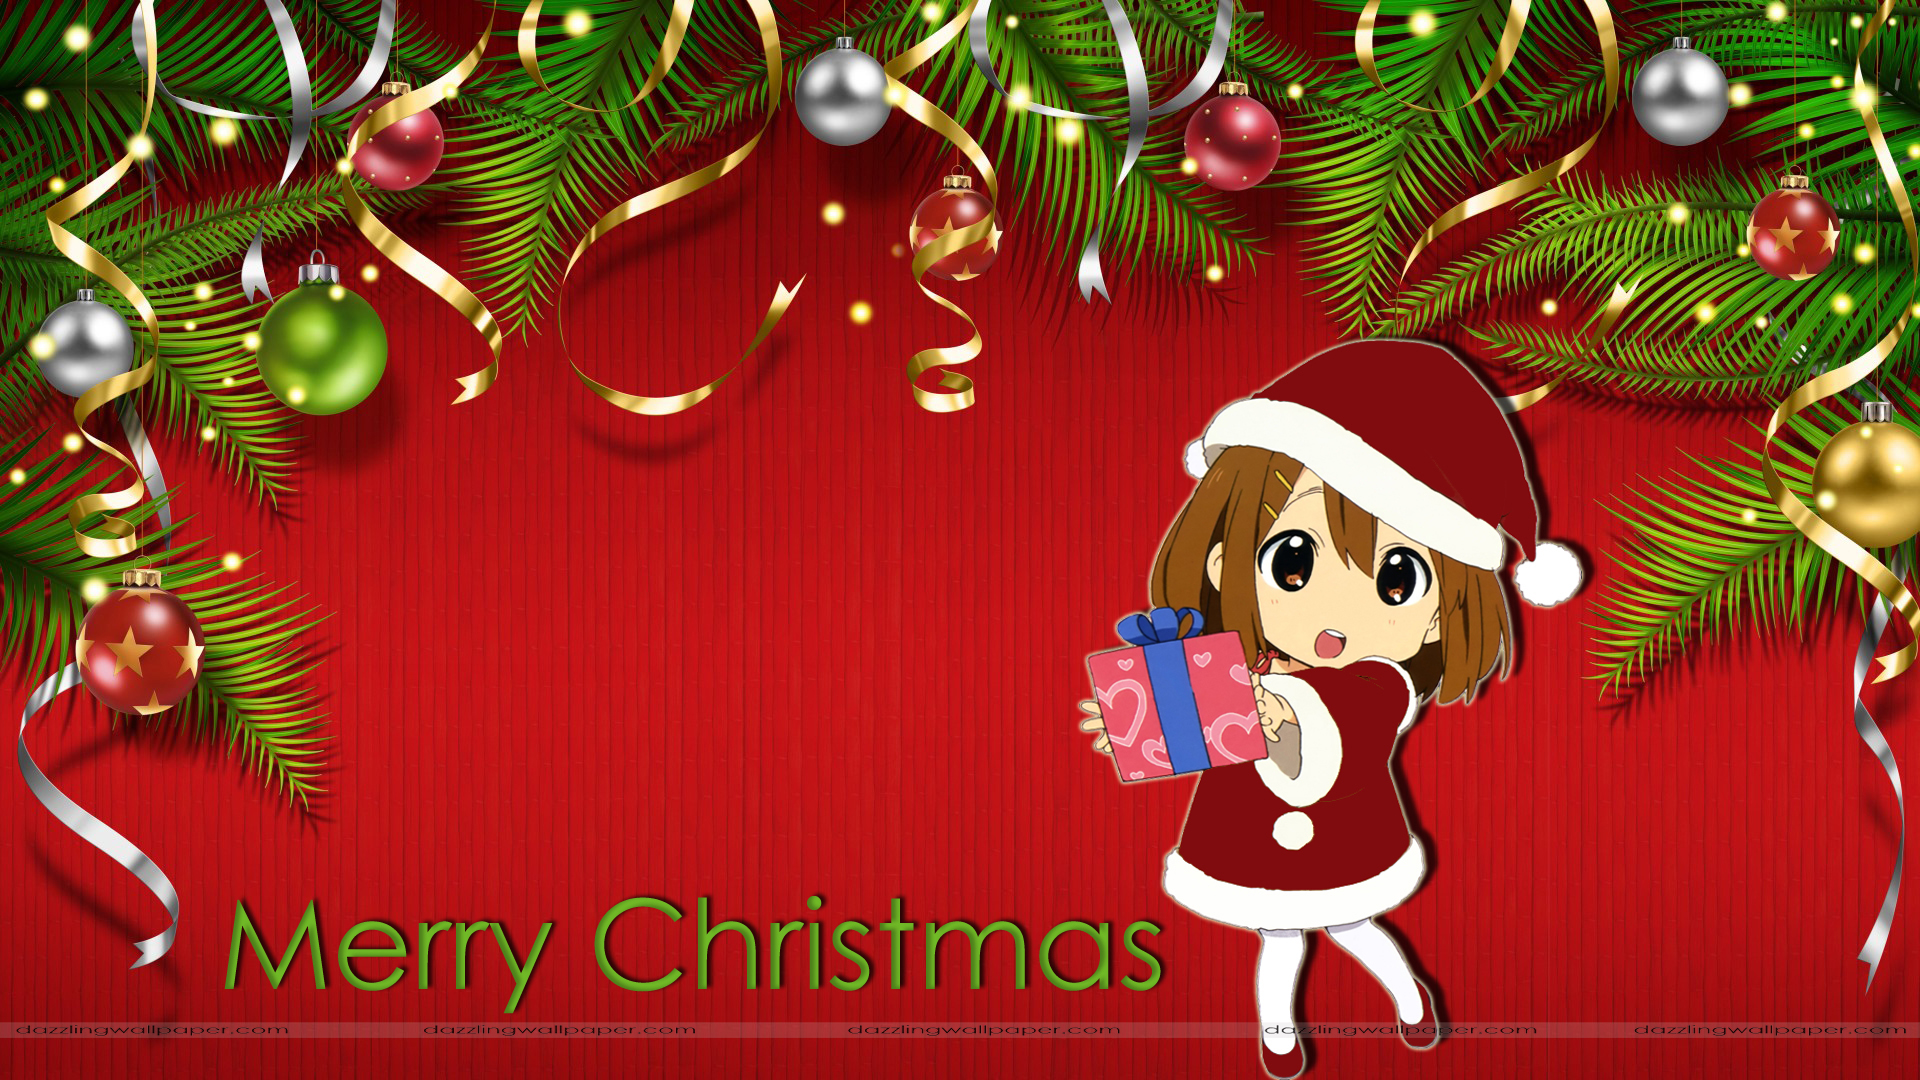 süße frohe weihnachten tapete,weihnachten,heiligabend,baum,weihnachtsbaum,weihnachtsdekoration